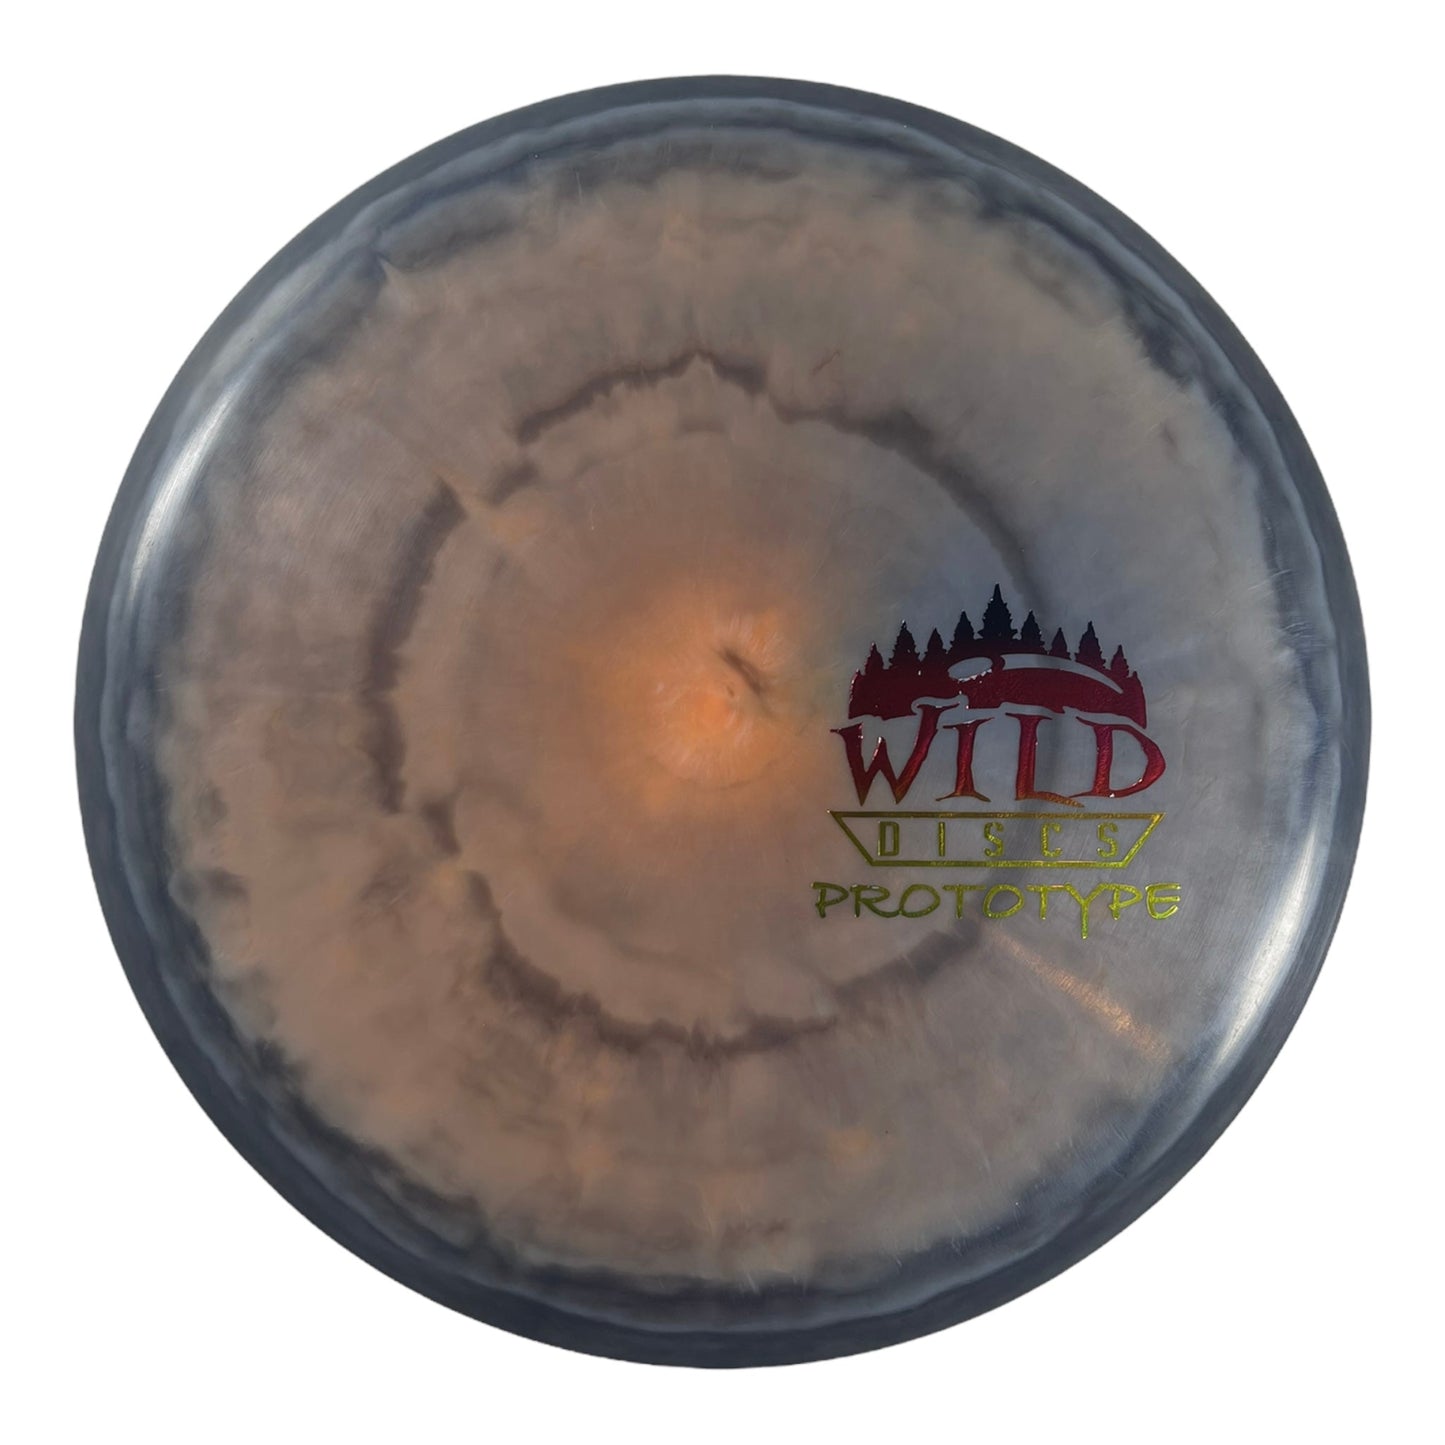 Wild Discs Prototype | Whirlpool | Grey/Rainbow 180g